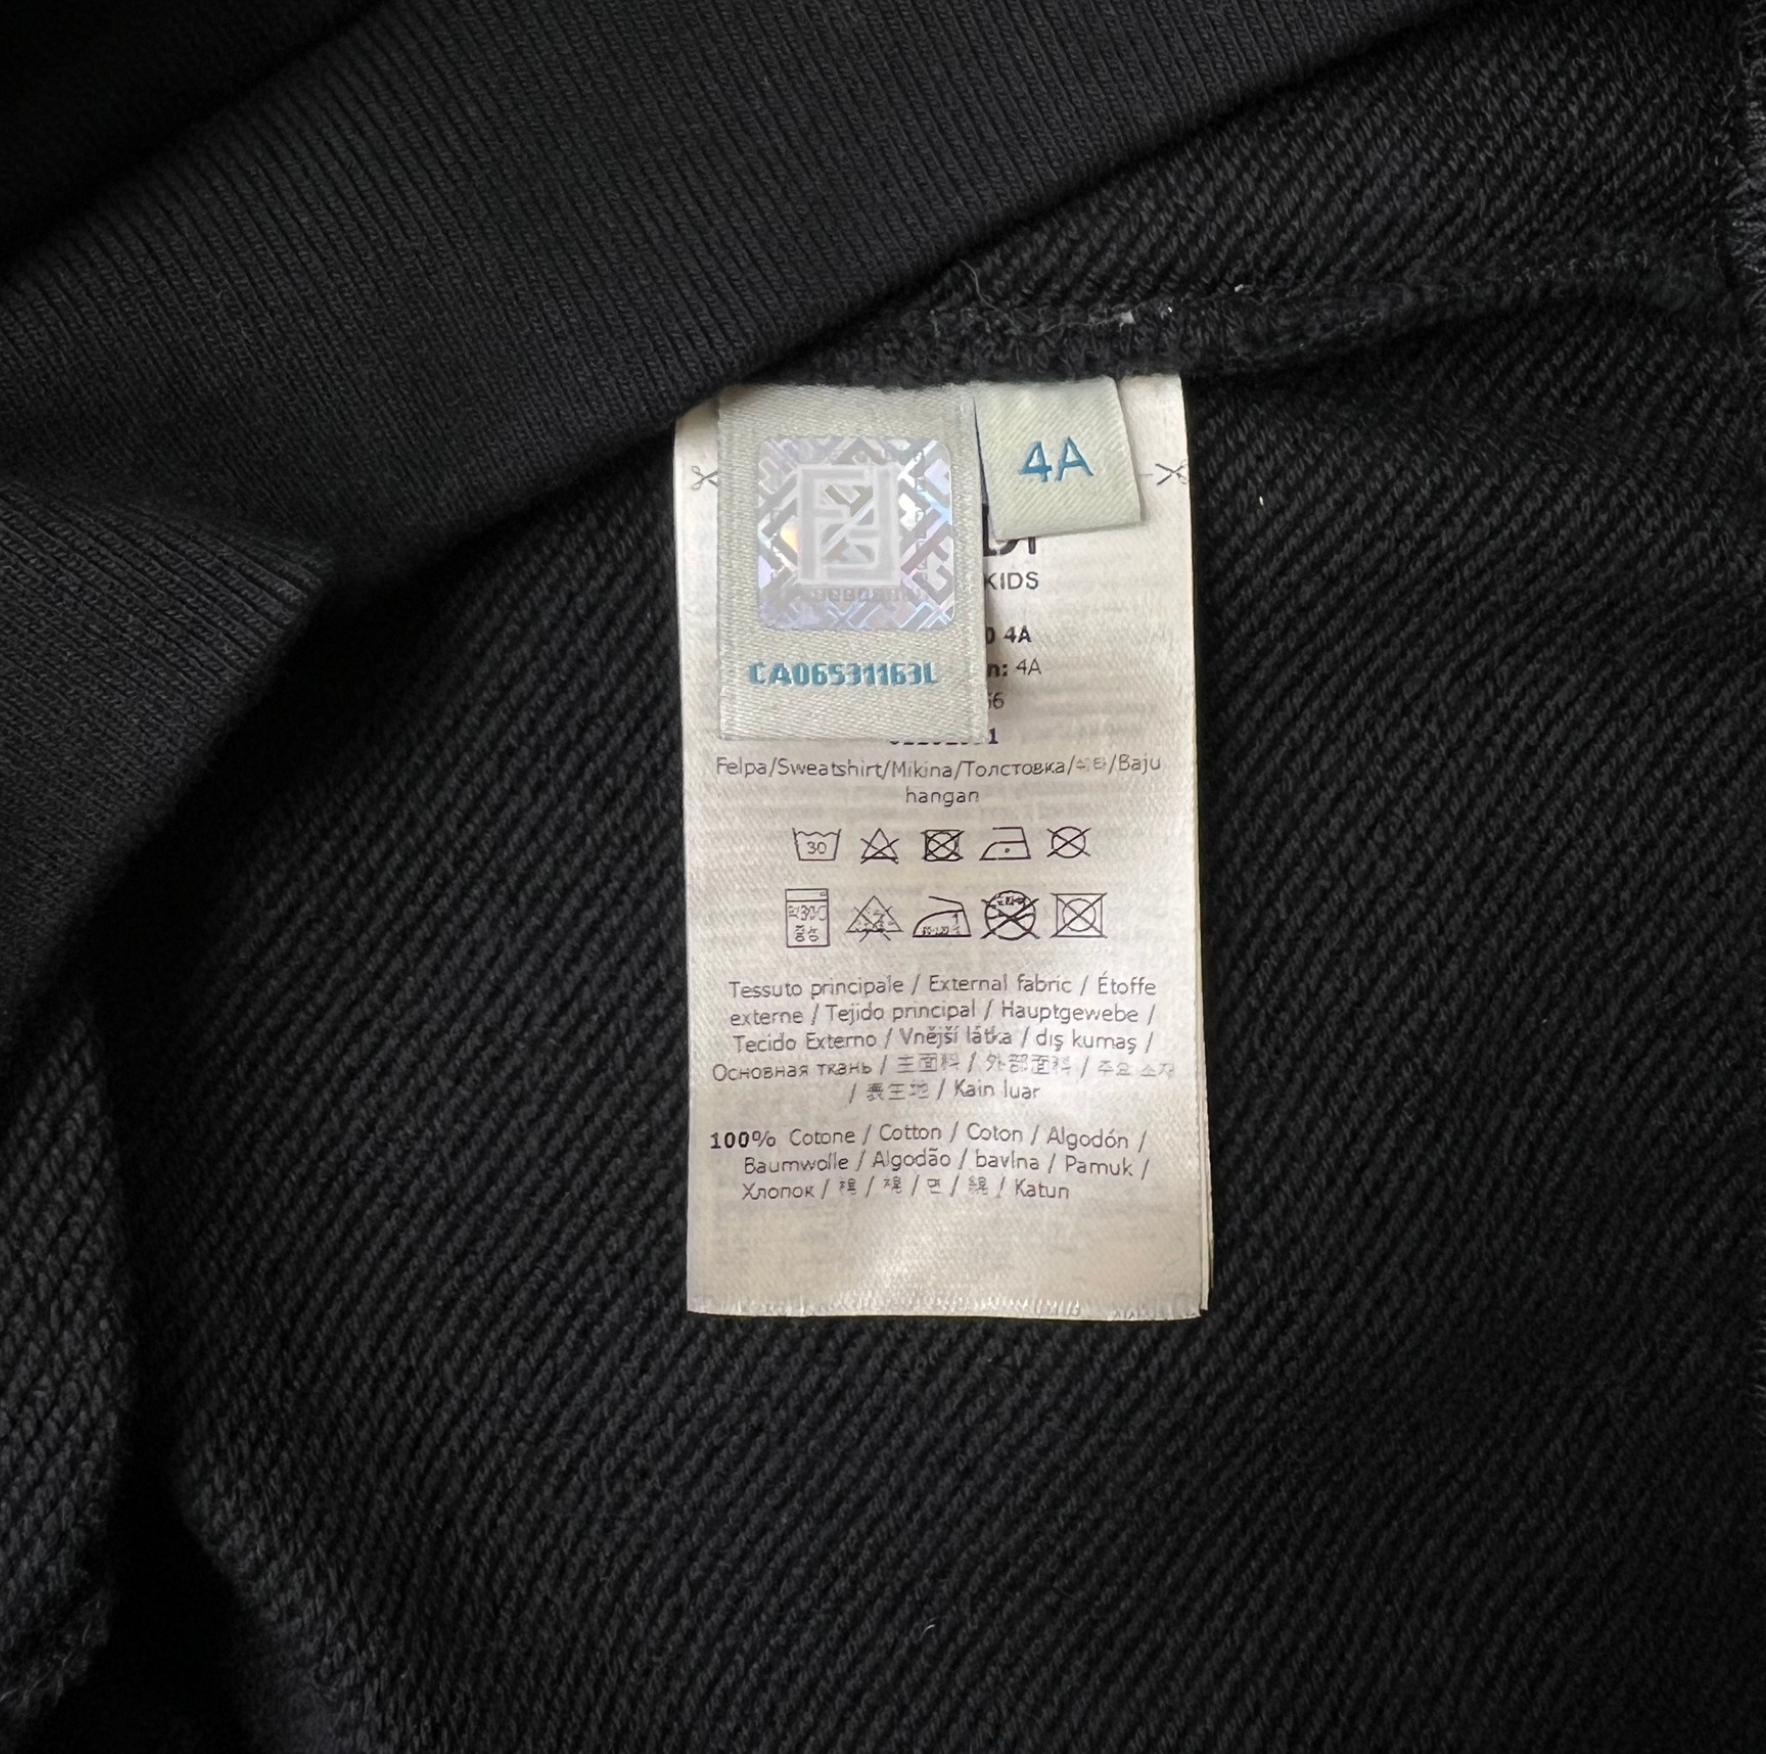 FENDI - Black sweatshirt with logo - 4 years